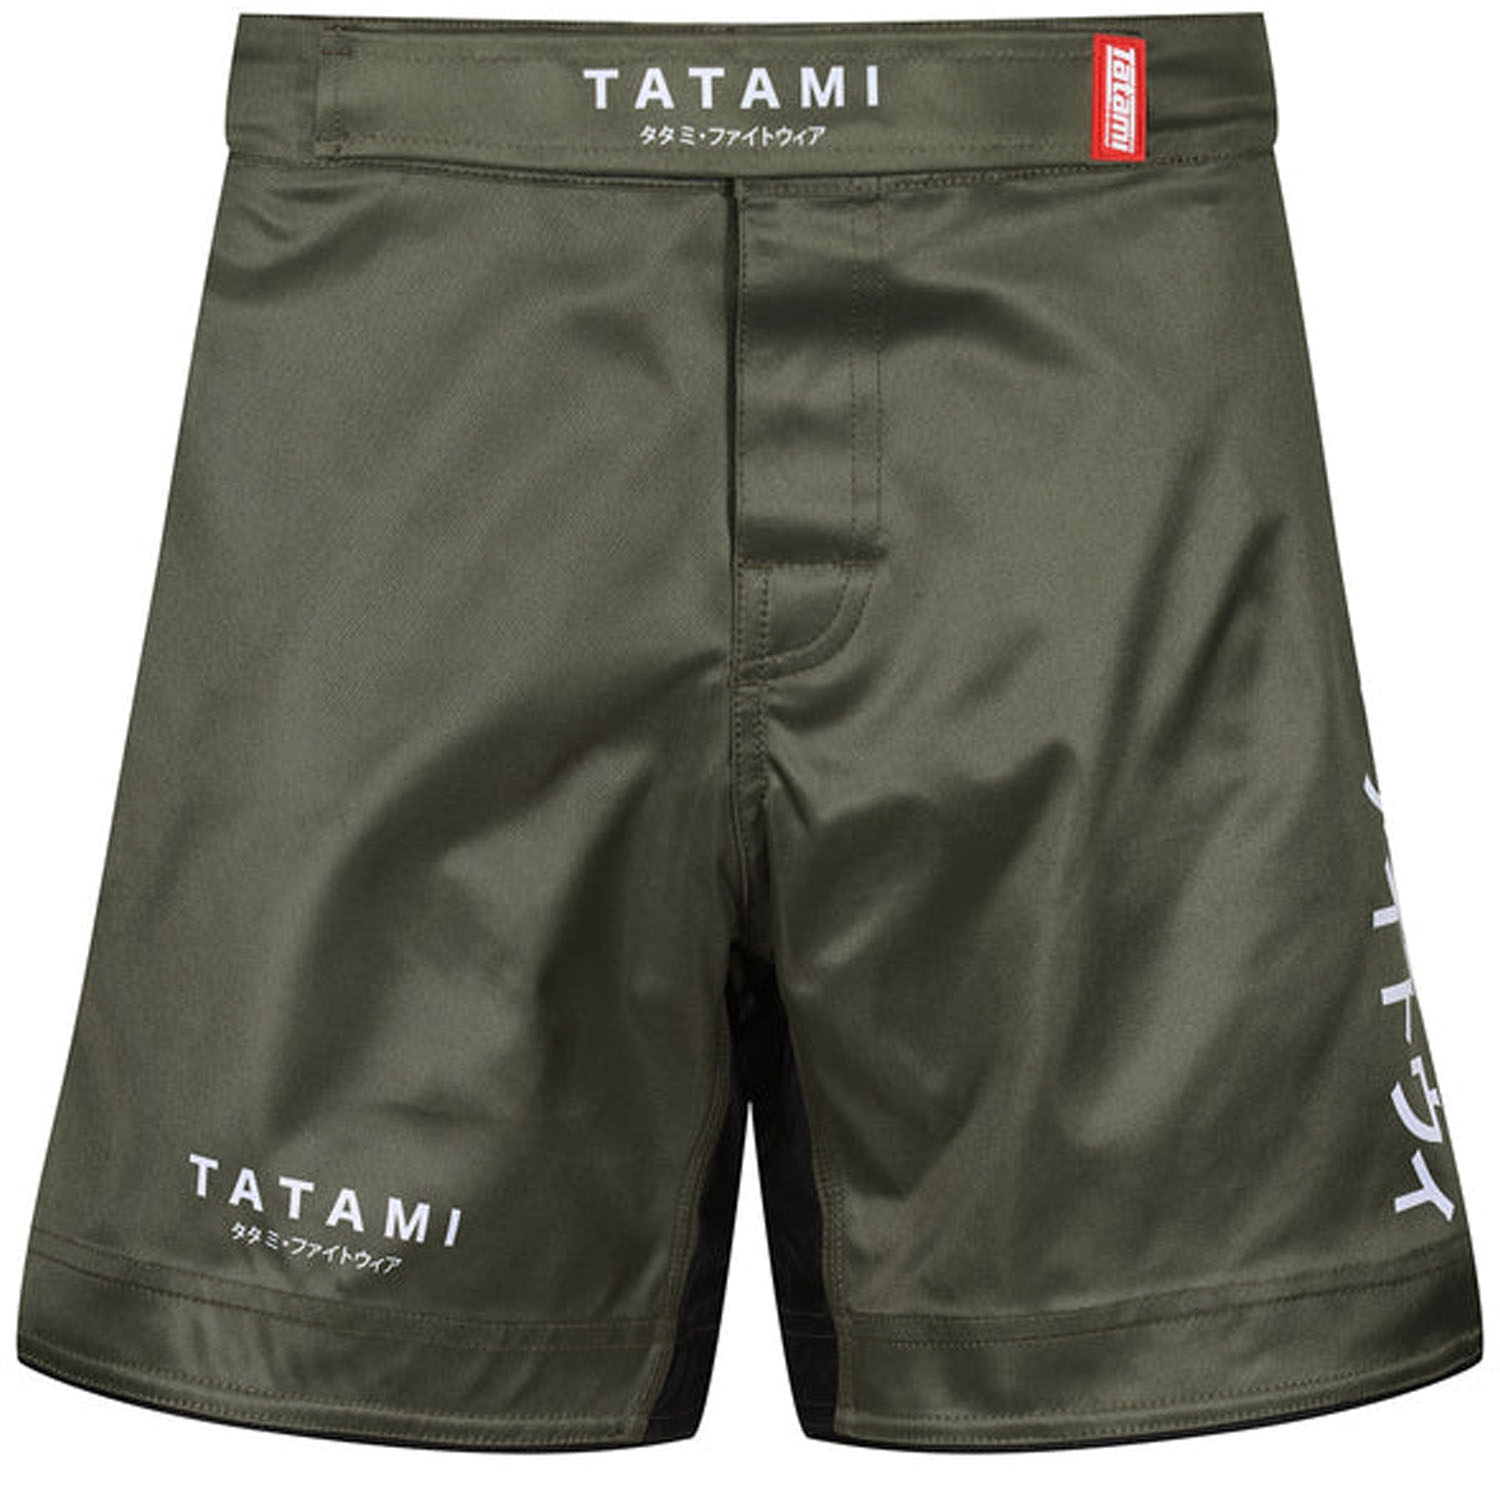 Tatami MMA Fight Short, Katakana, Khaki